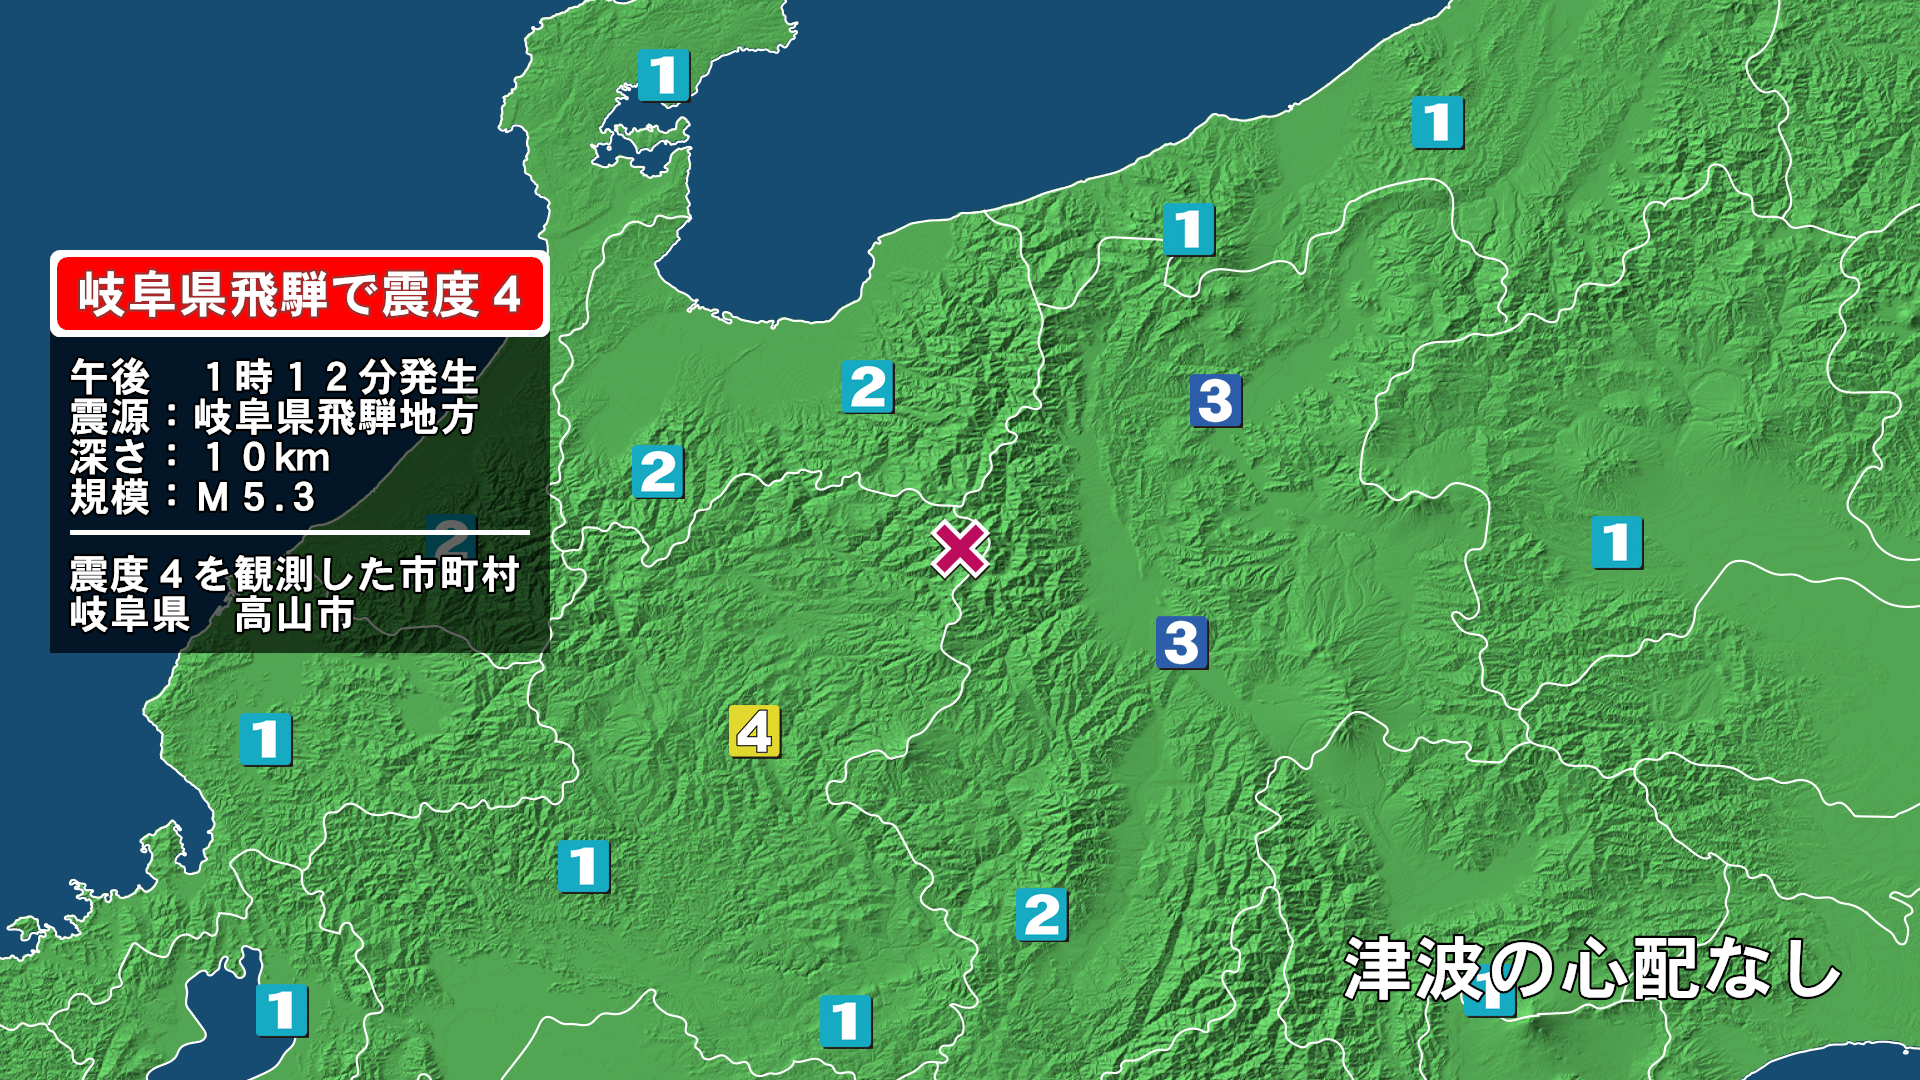 速報 岐阜 地震 5分でわかる岐阜県で起きる地震発生の確率と被害予想について